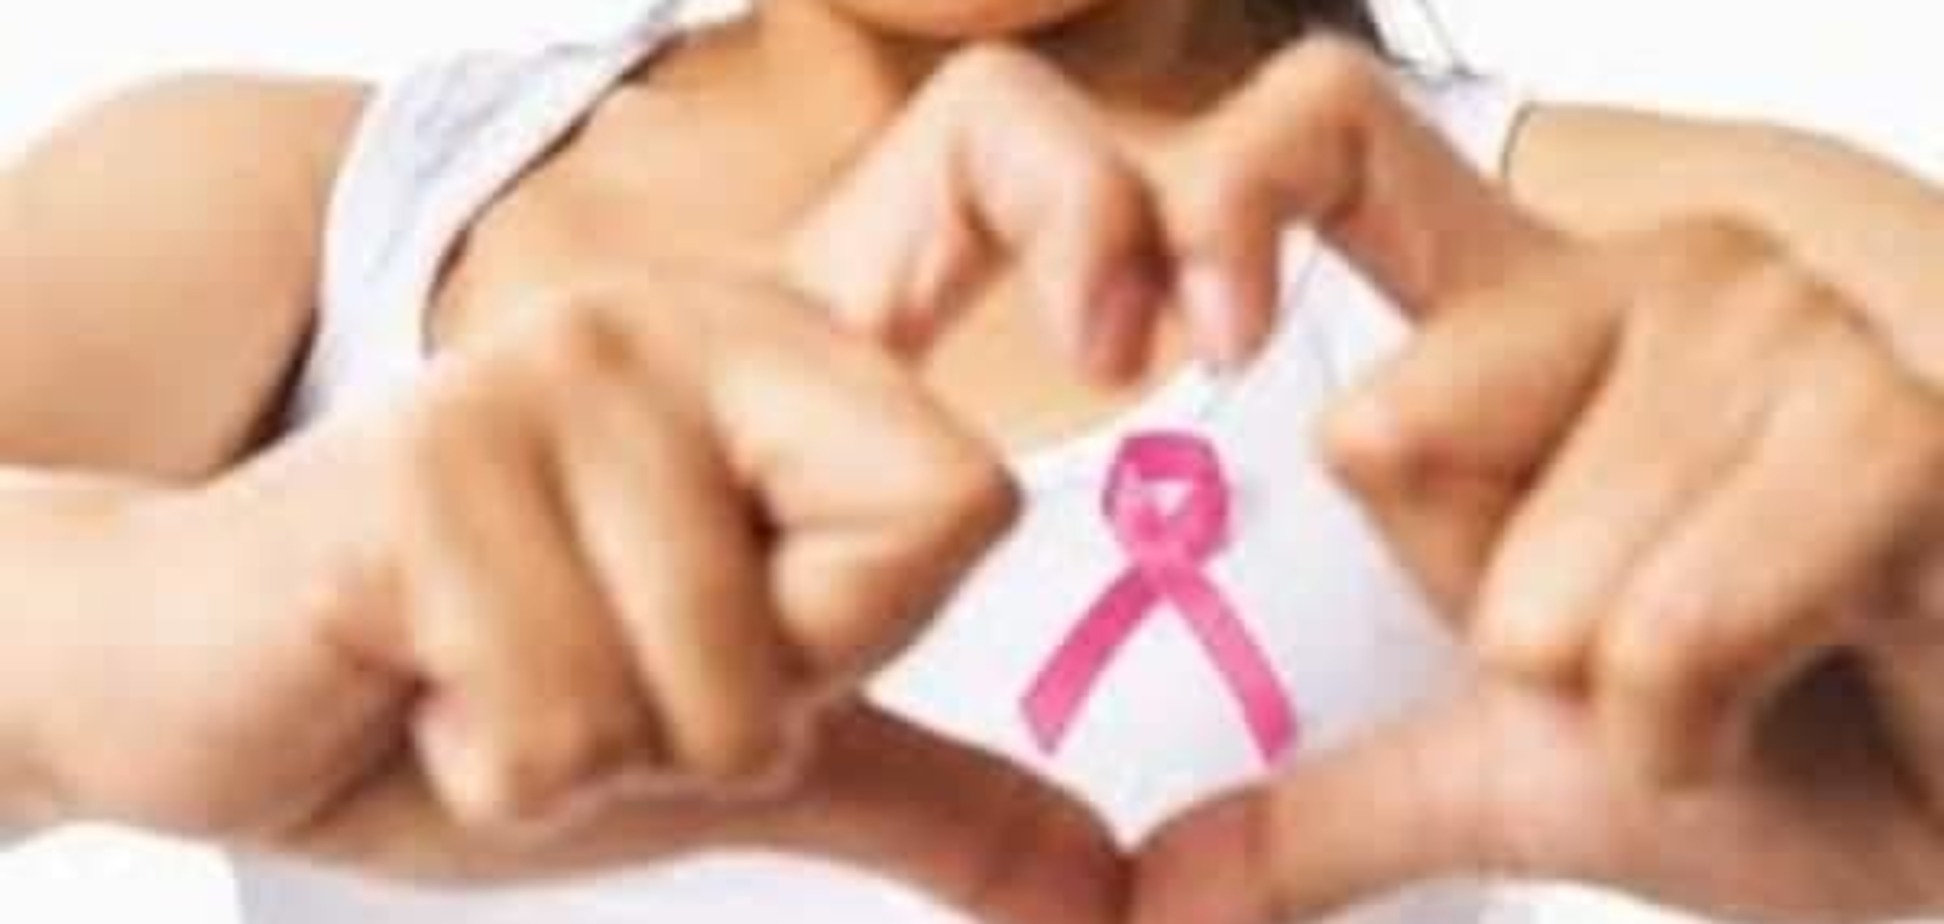 Лечение бесплодия может привести к раку груди